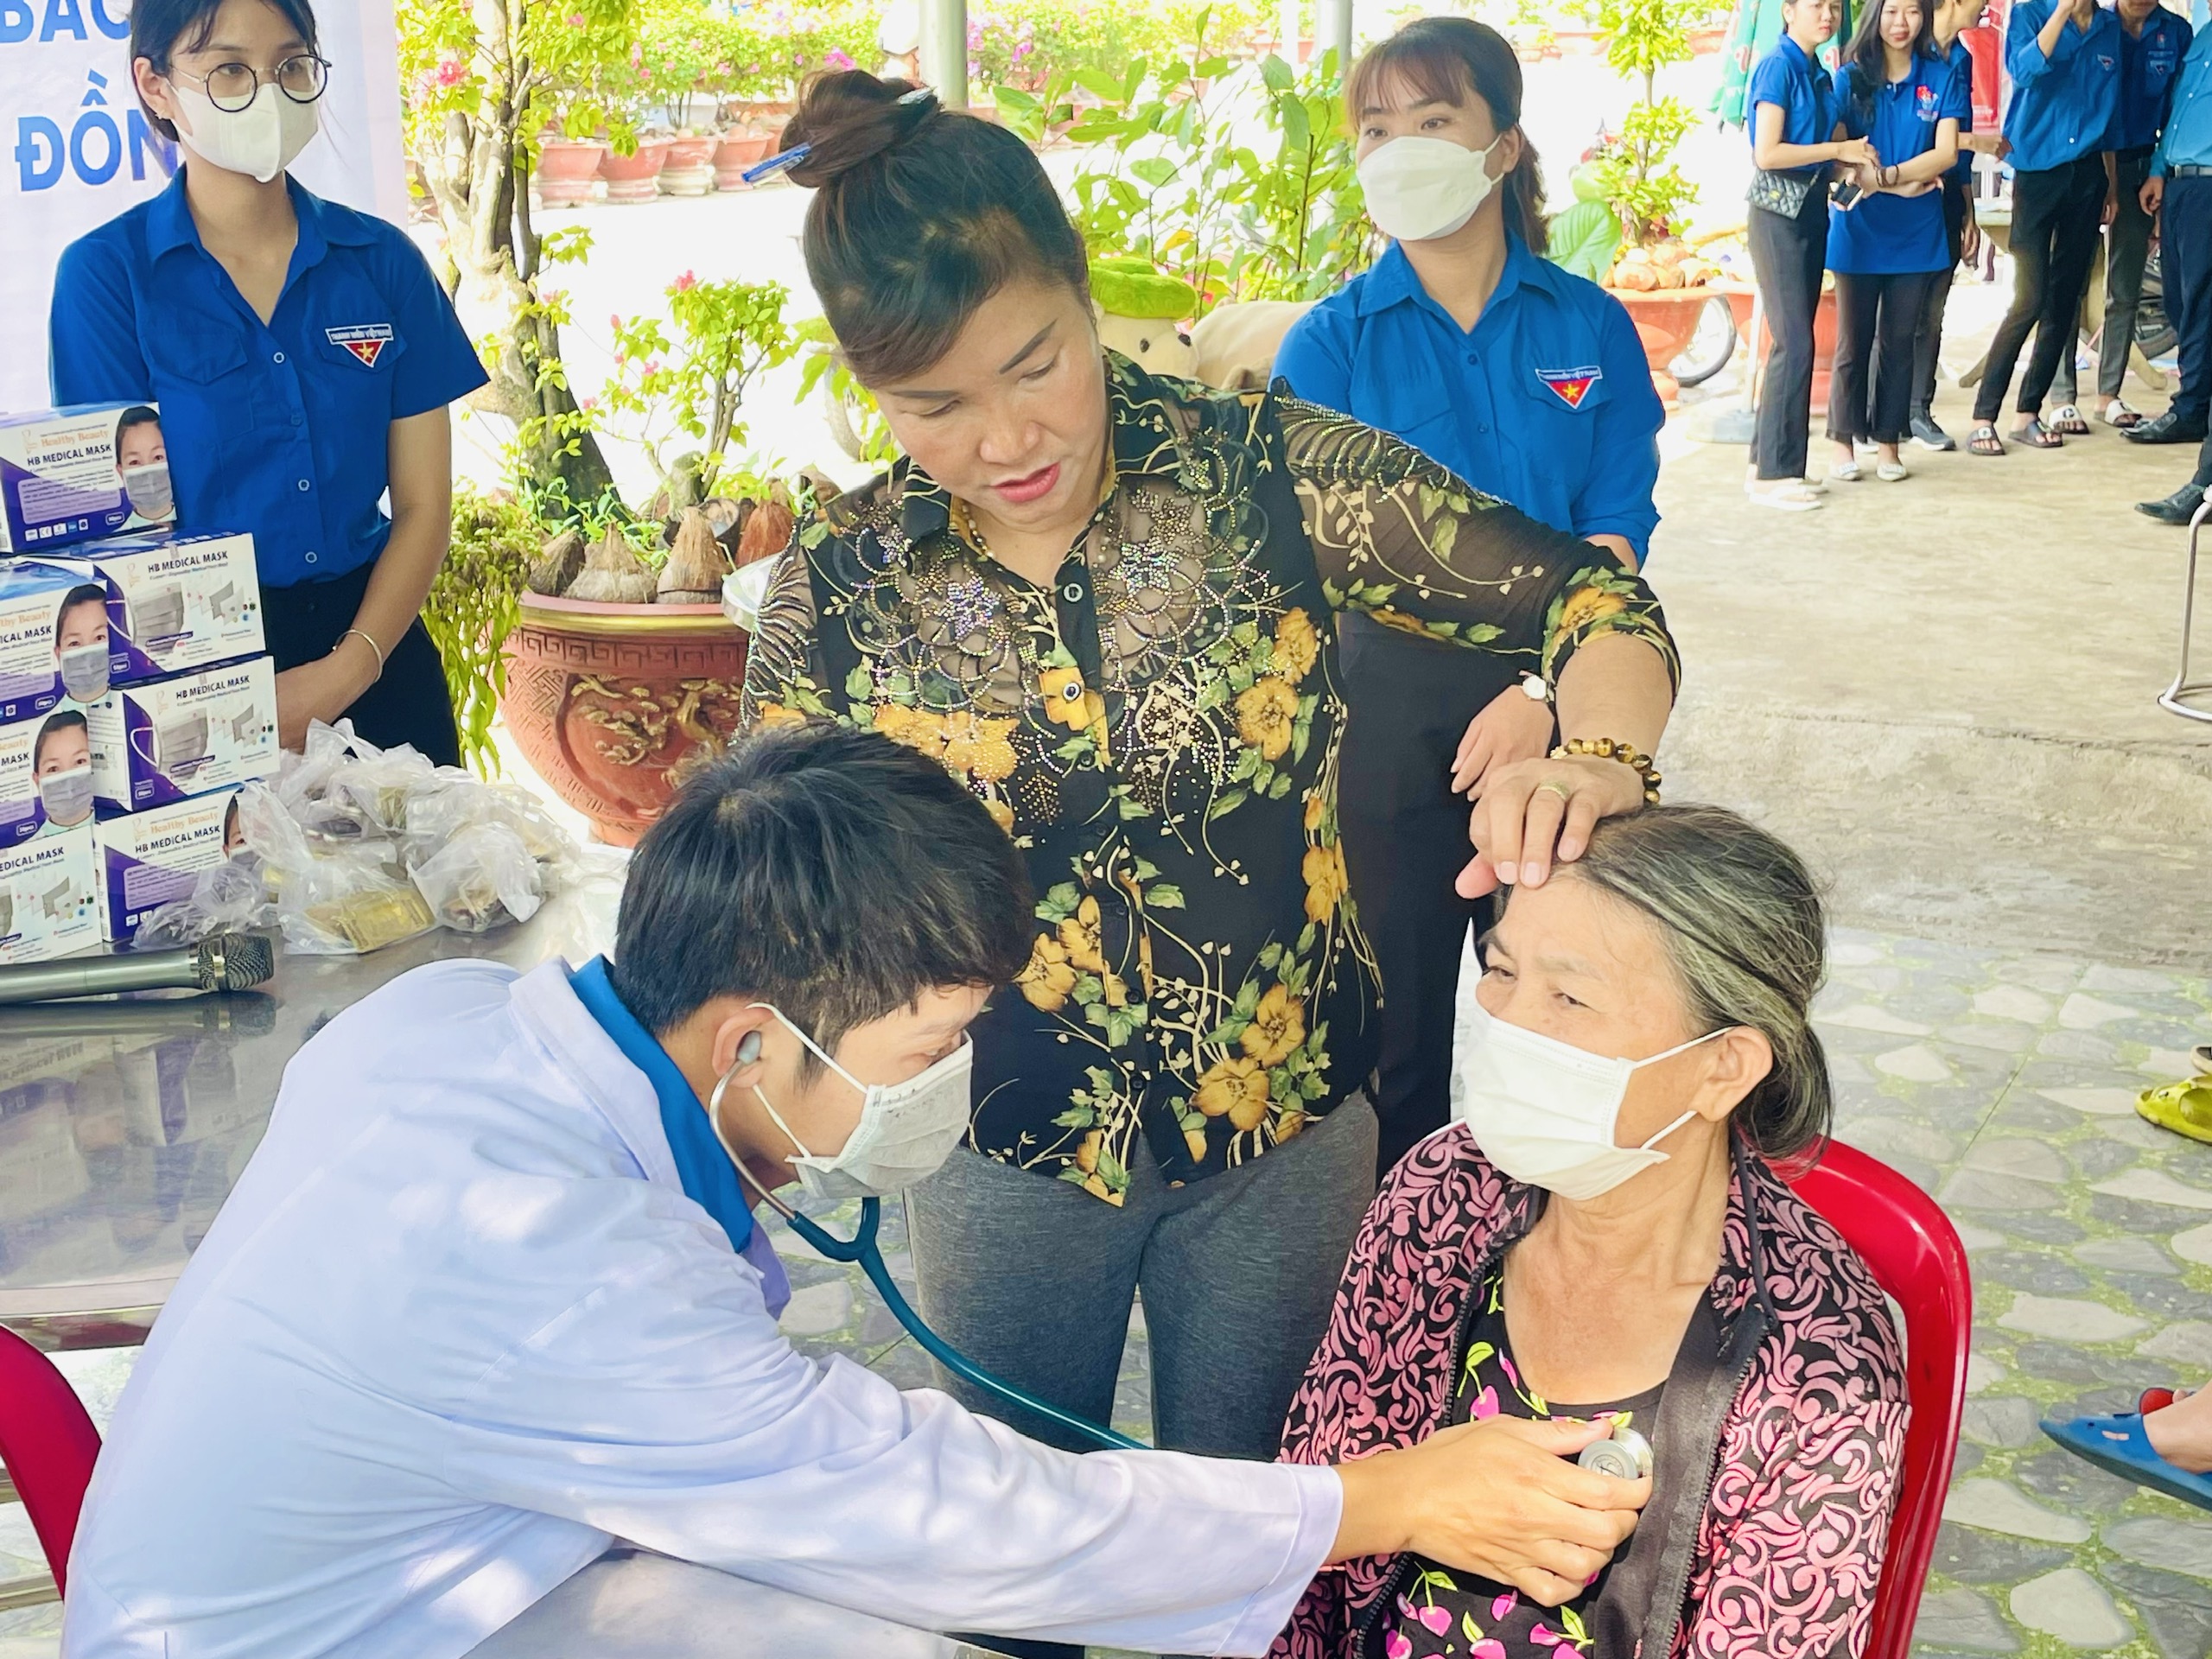 Bác sĩ Nguyễn Minh Đạo - Thành viên CLB thầy thuốc trẻ huyện đang khám bệnh cho người dân.